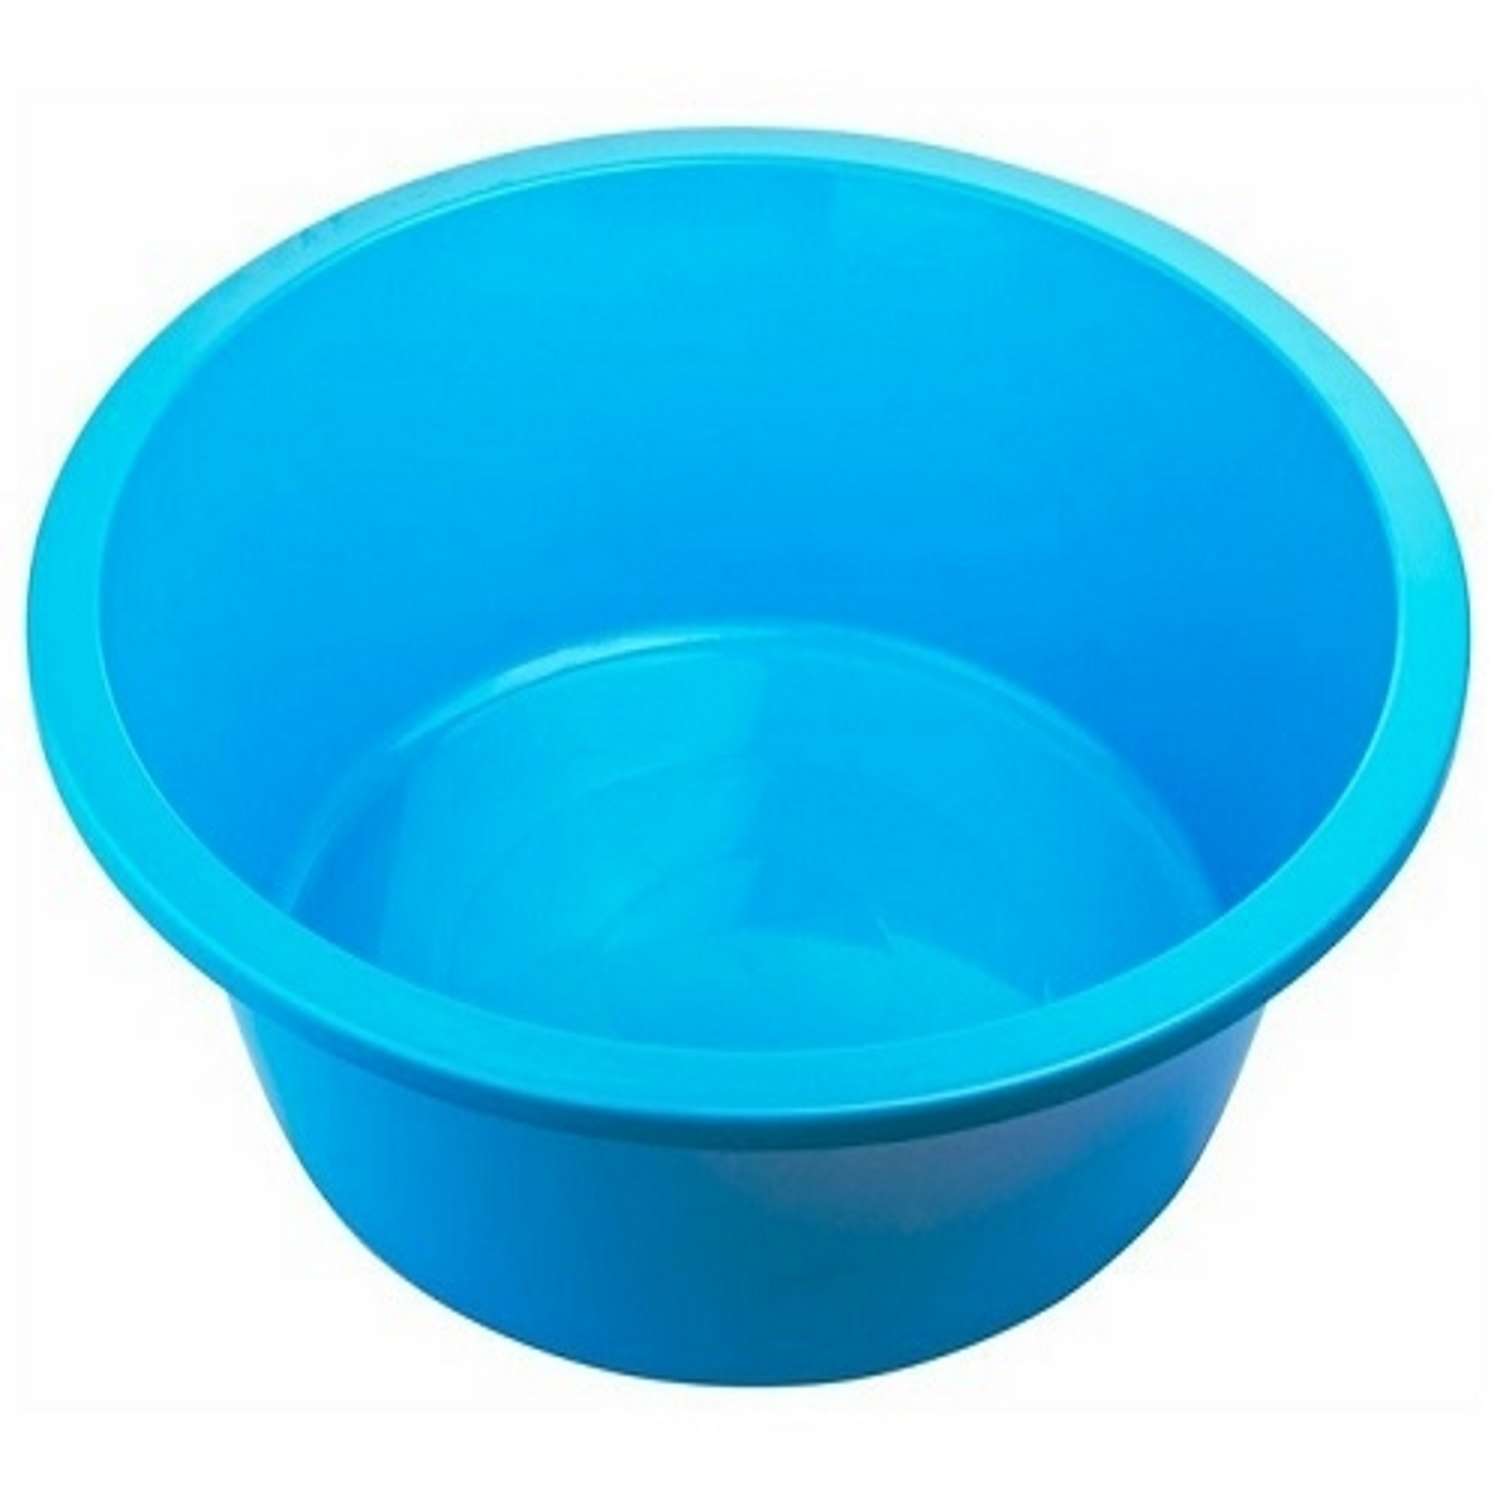 Таз elfplast круглый 11 литров хозяйственный голубой - фото 3